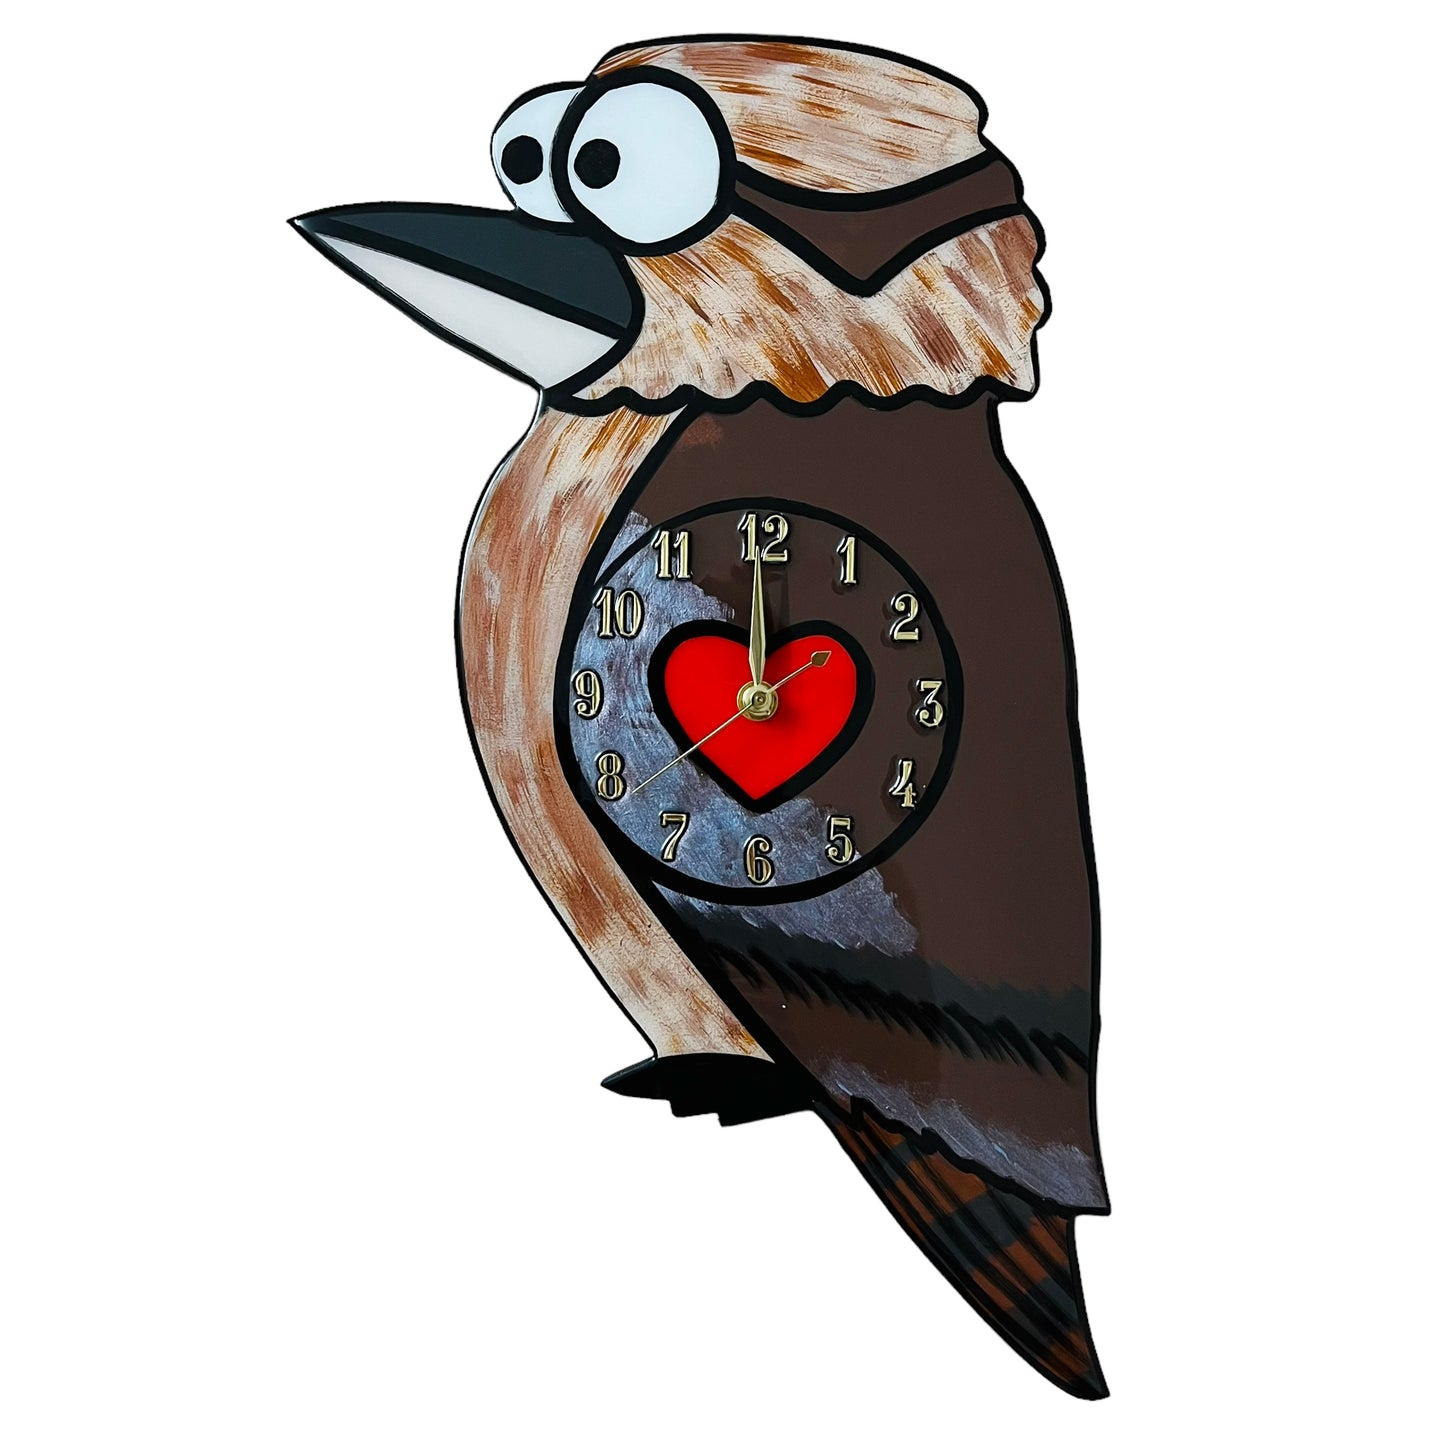 Kookaburra clock